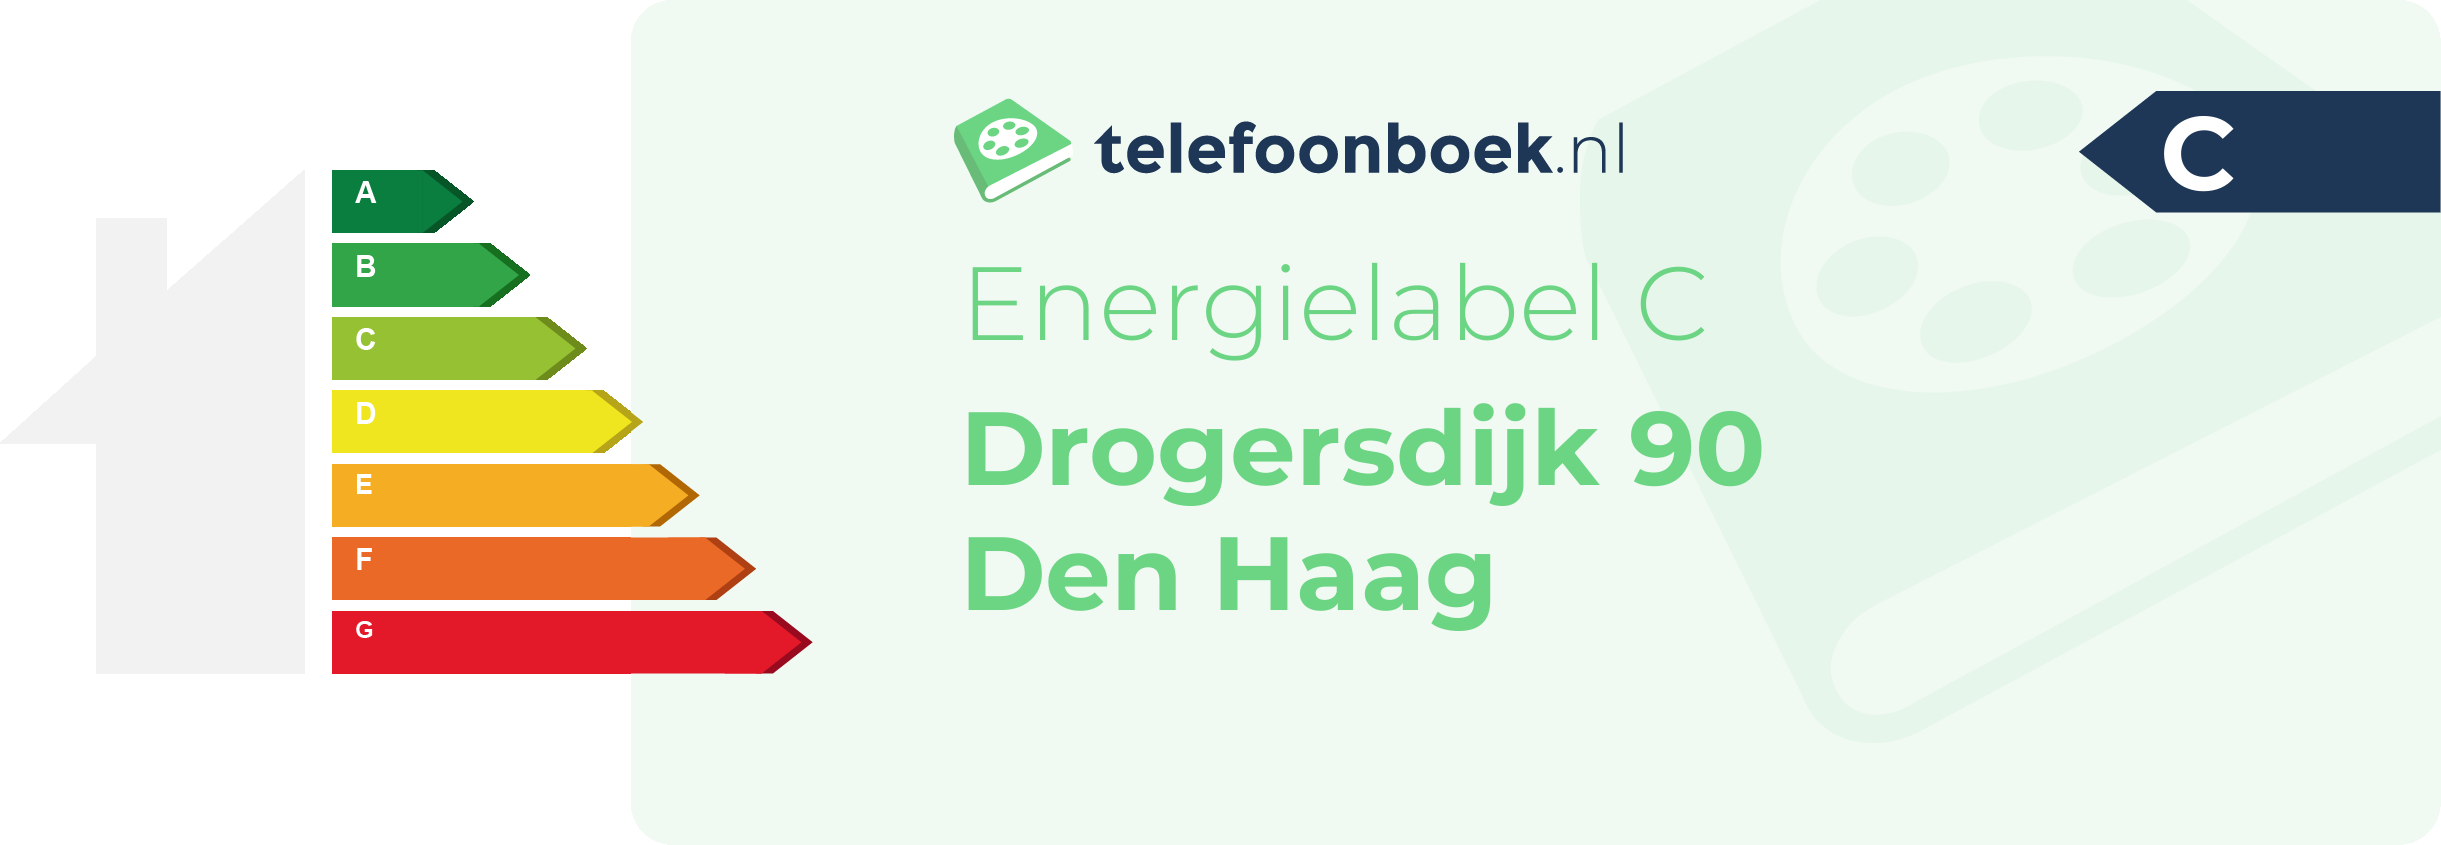 Energielabel Drogersdijk 90 Den Haag